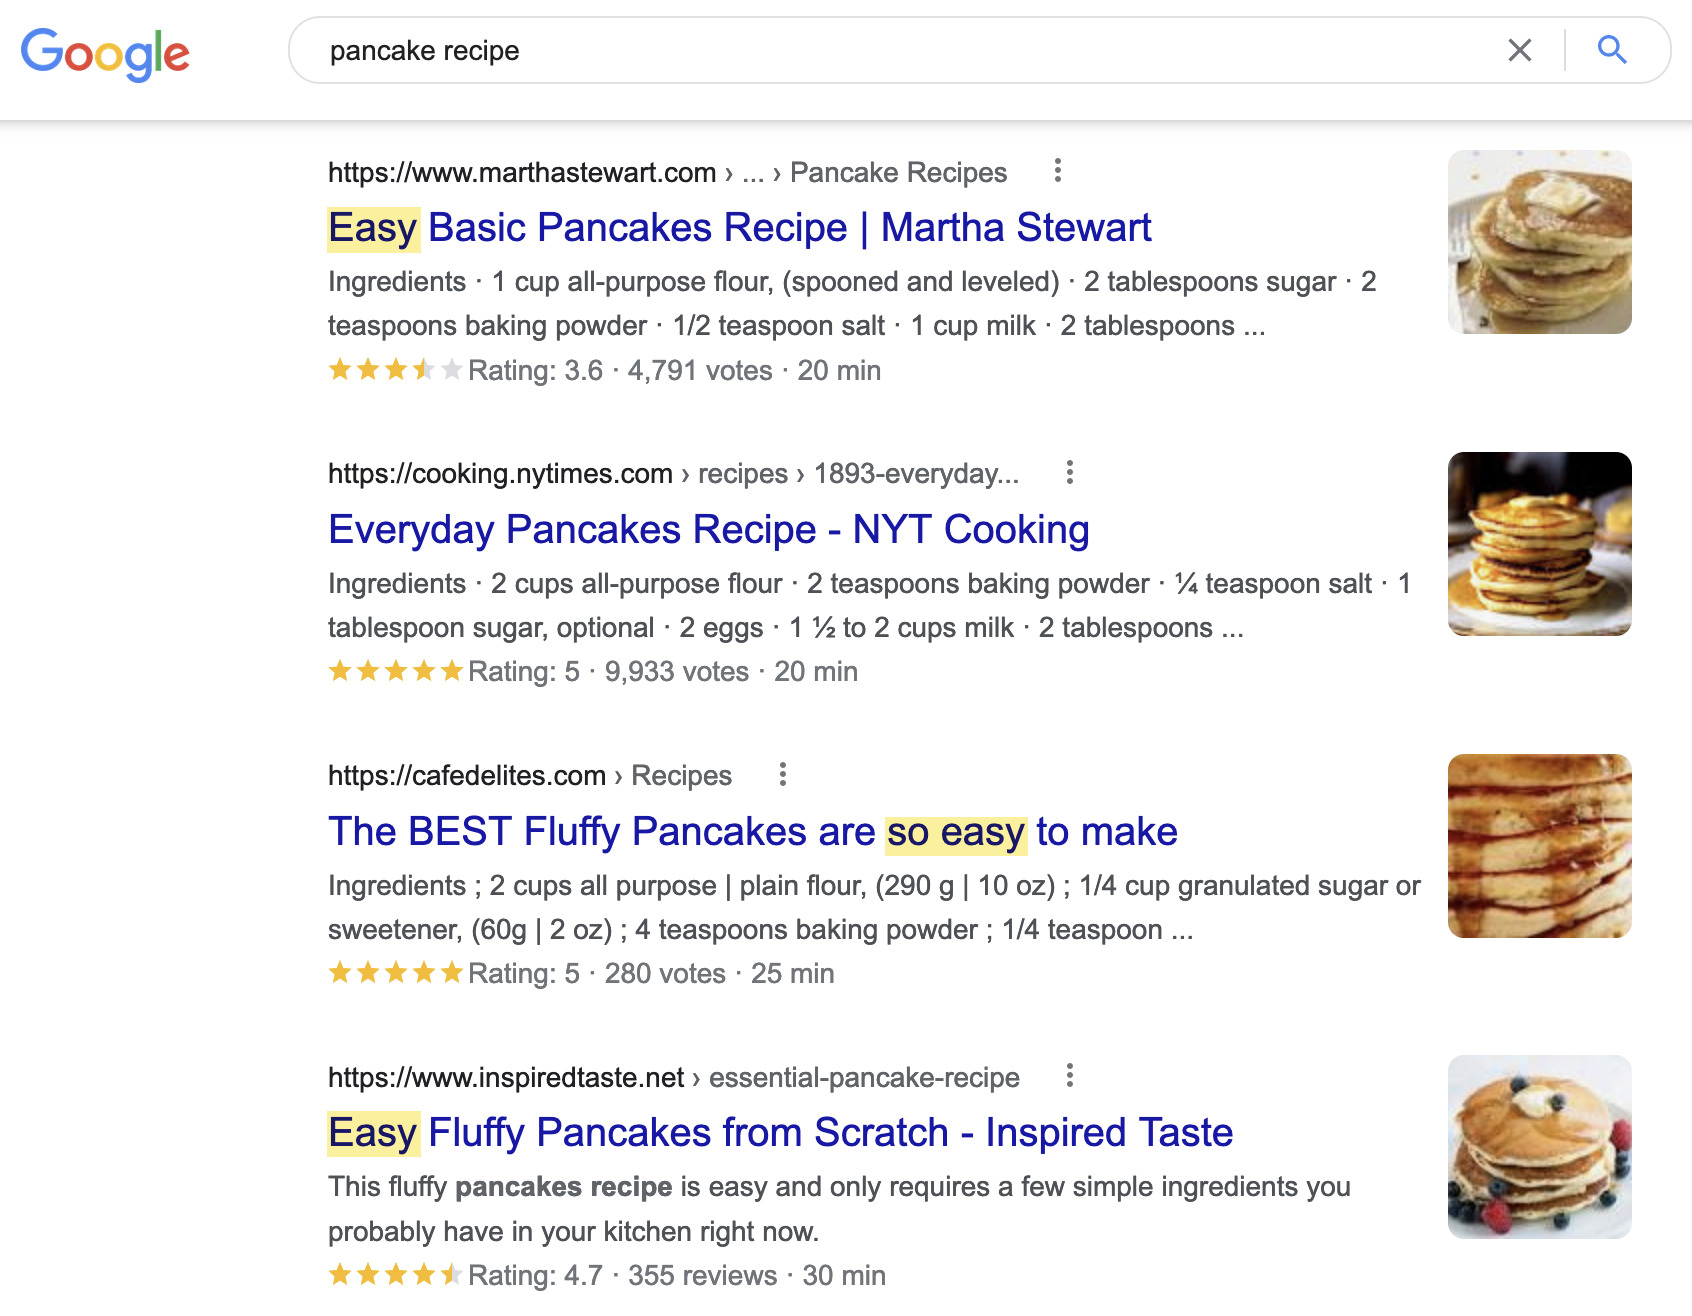 搜索“煎饼食谱”的人显然想要一个简单食谱的博客帖子  